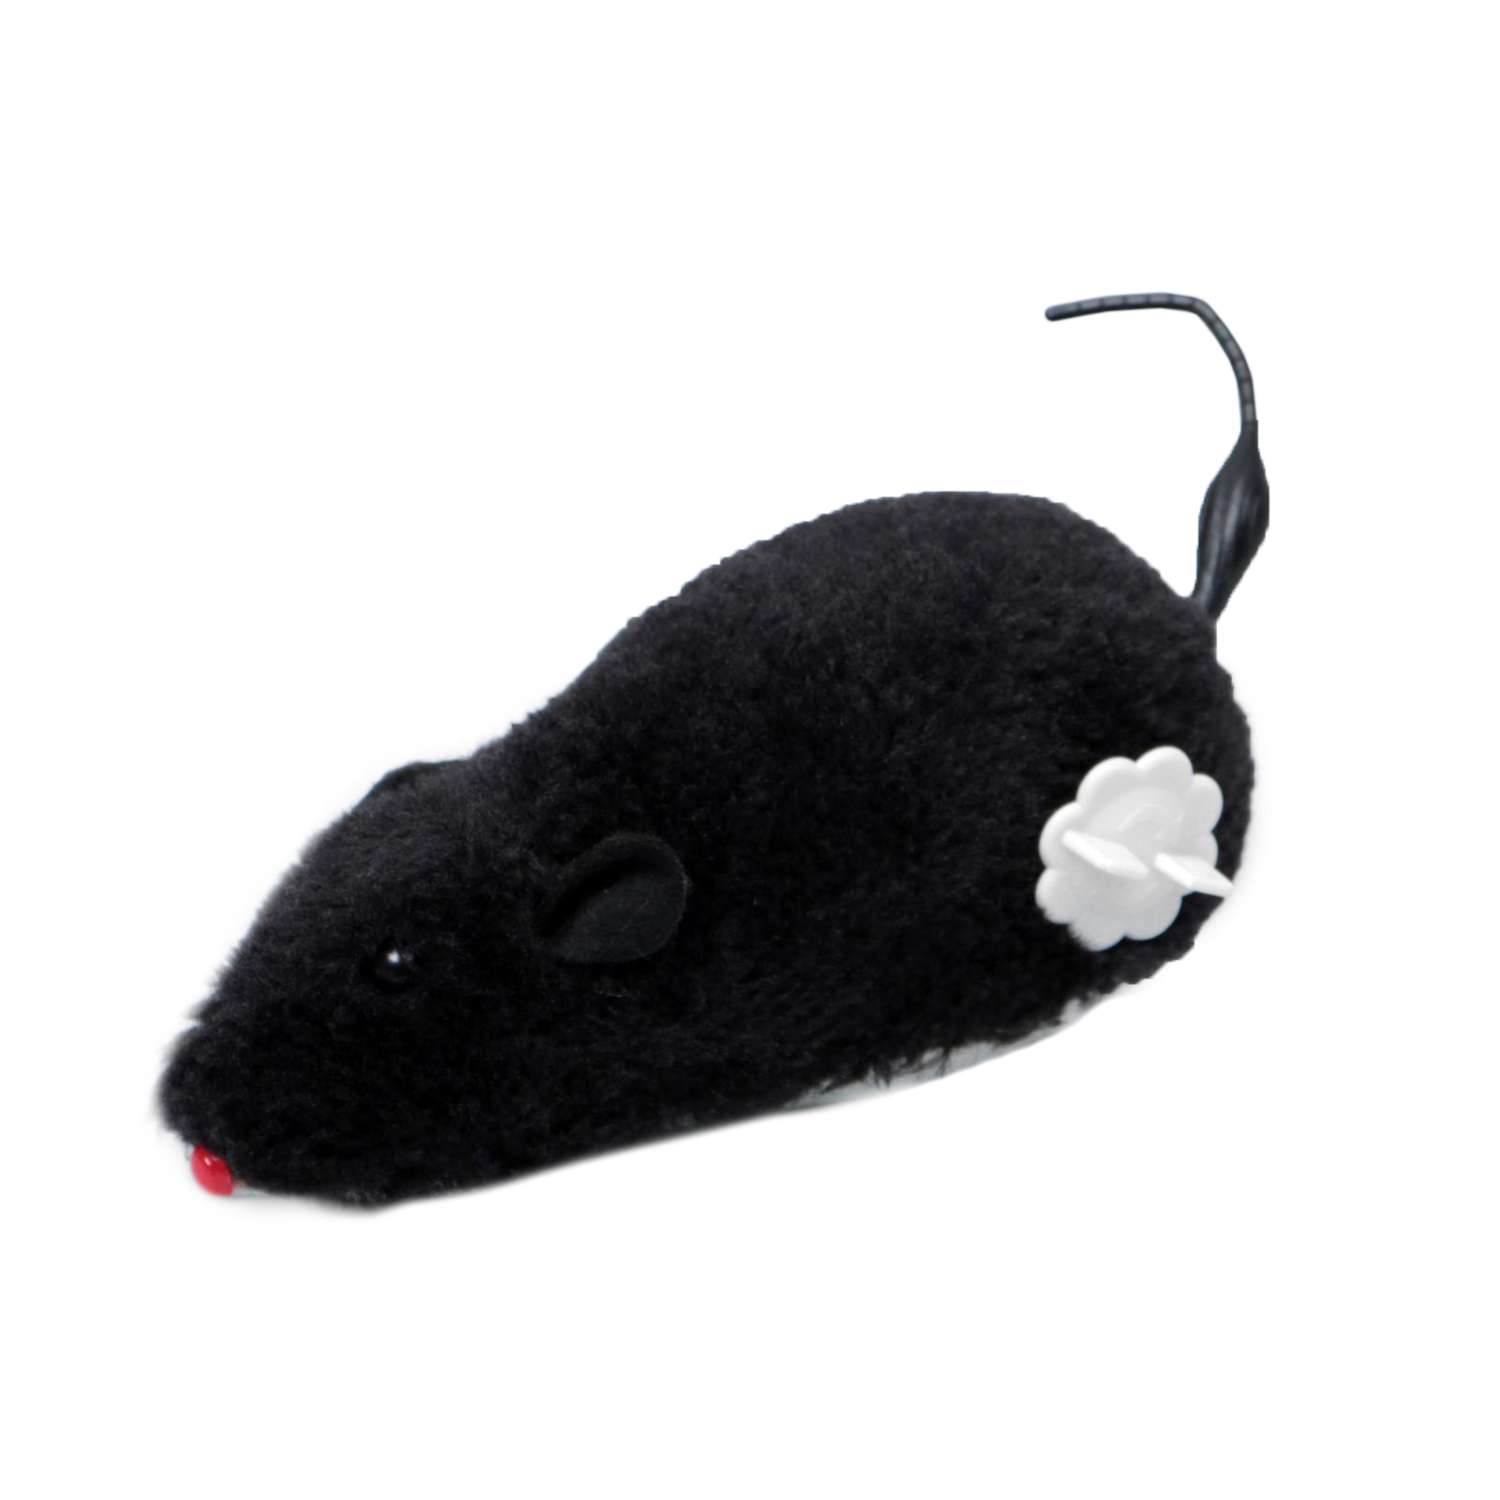 Мышь заводная Пижон меховая 12 см чёрная - фото 1